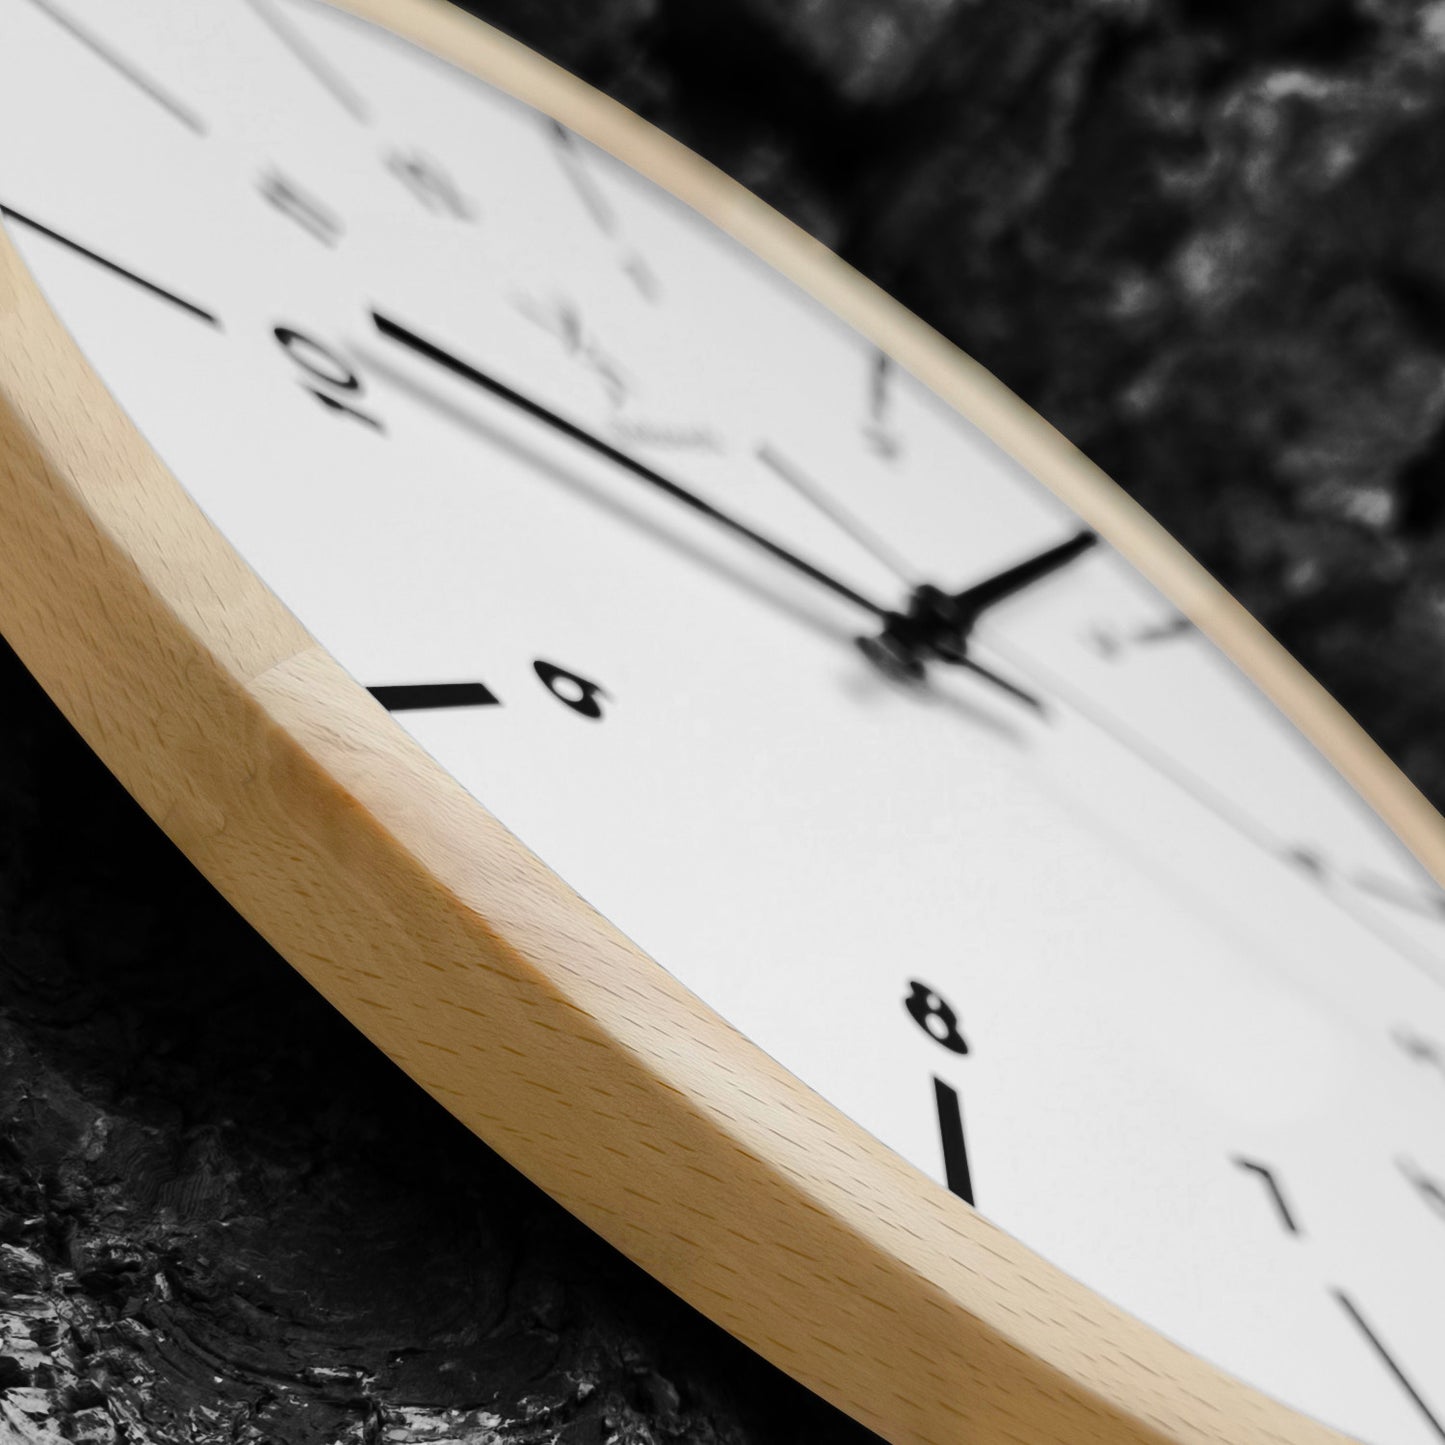 Holzwerk LÜNEBURG Holz Wanduhr groß, Wanduhr im skandinavischen Design, 32 cm Holz Quarz Wand-Uhr lautlos ohne Tick-Geräusche, beige, weiß, seitlich liegend